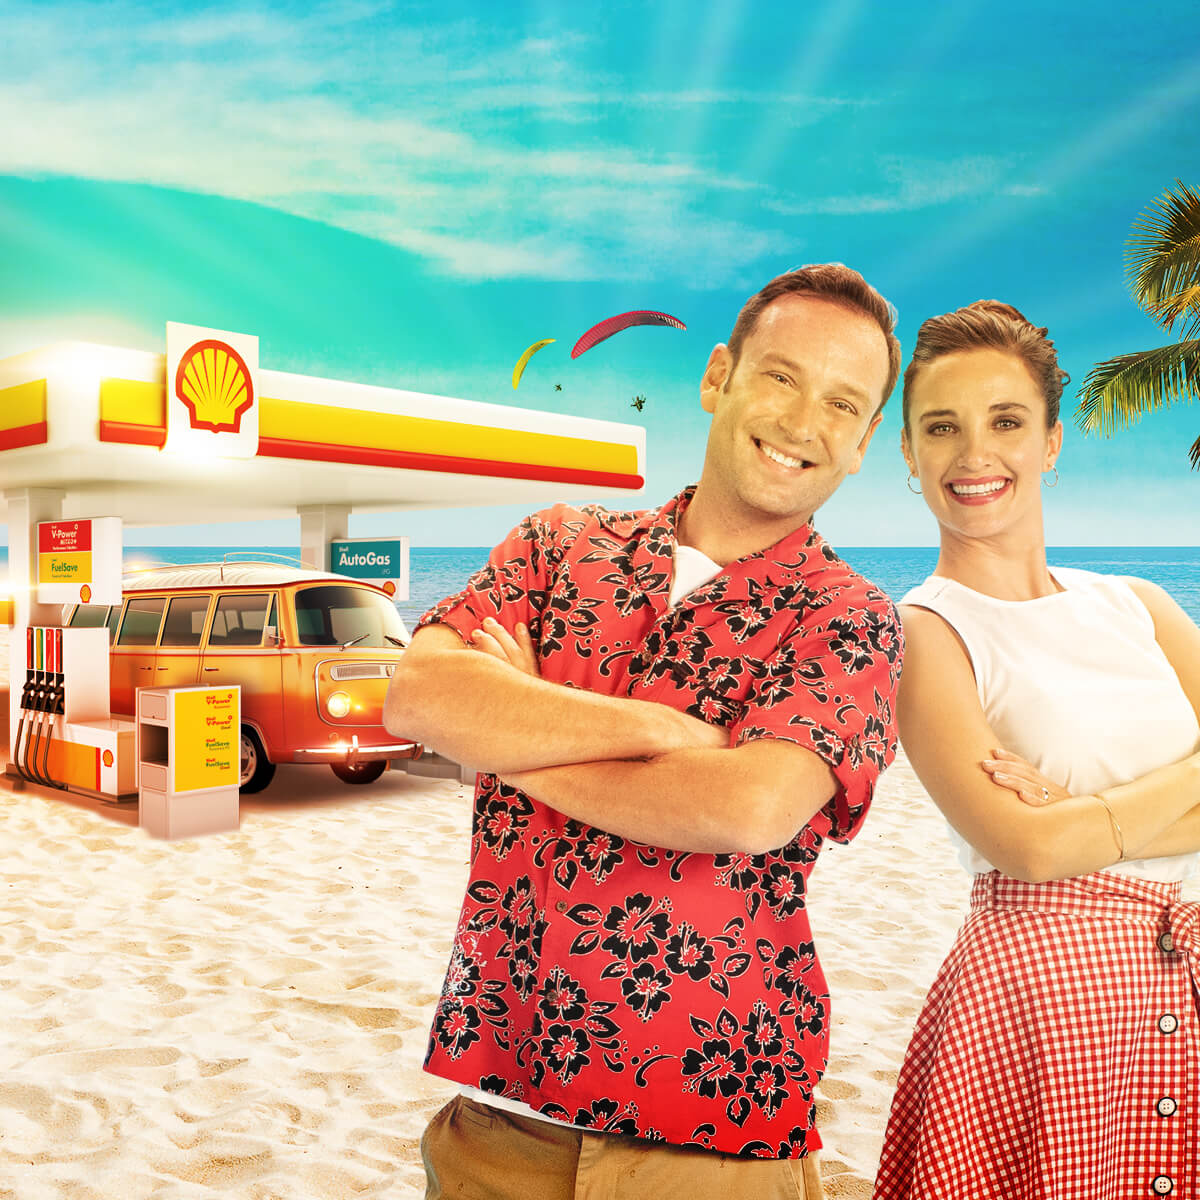 Jolly Tur’dan yurt içi tatil alanlara Shell’den 30 TL değerinde yakıt hediye